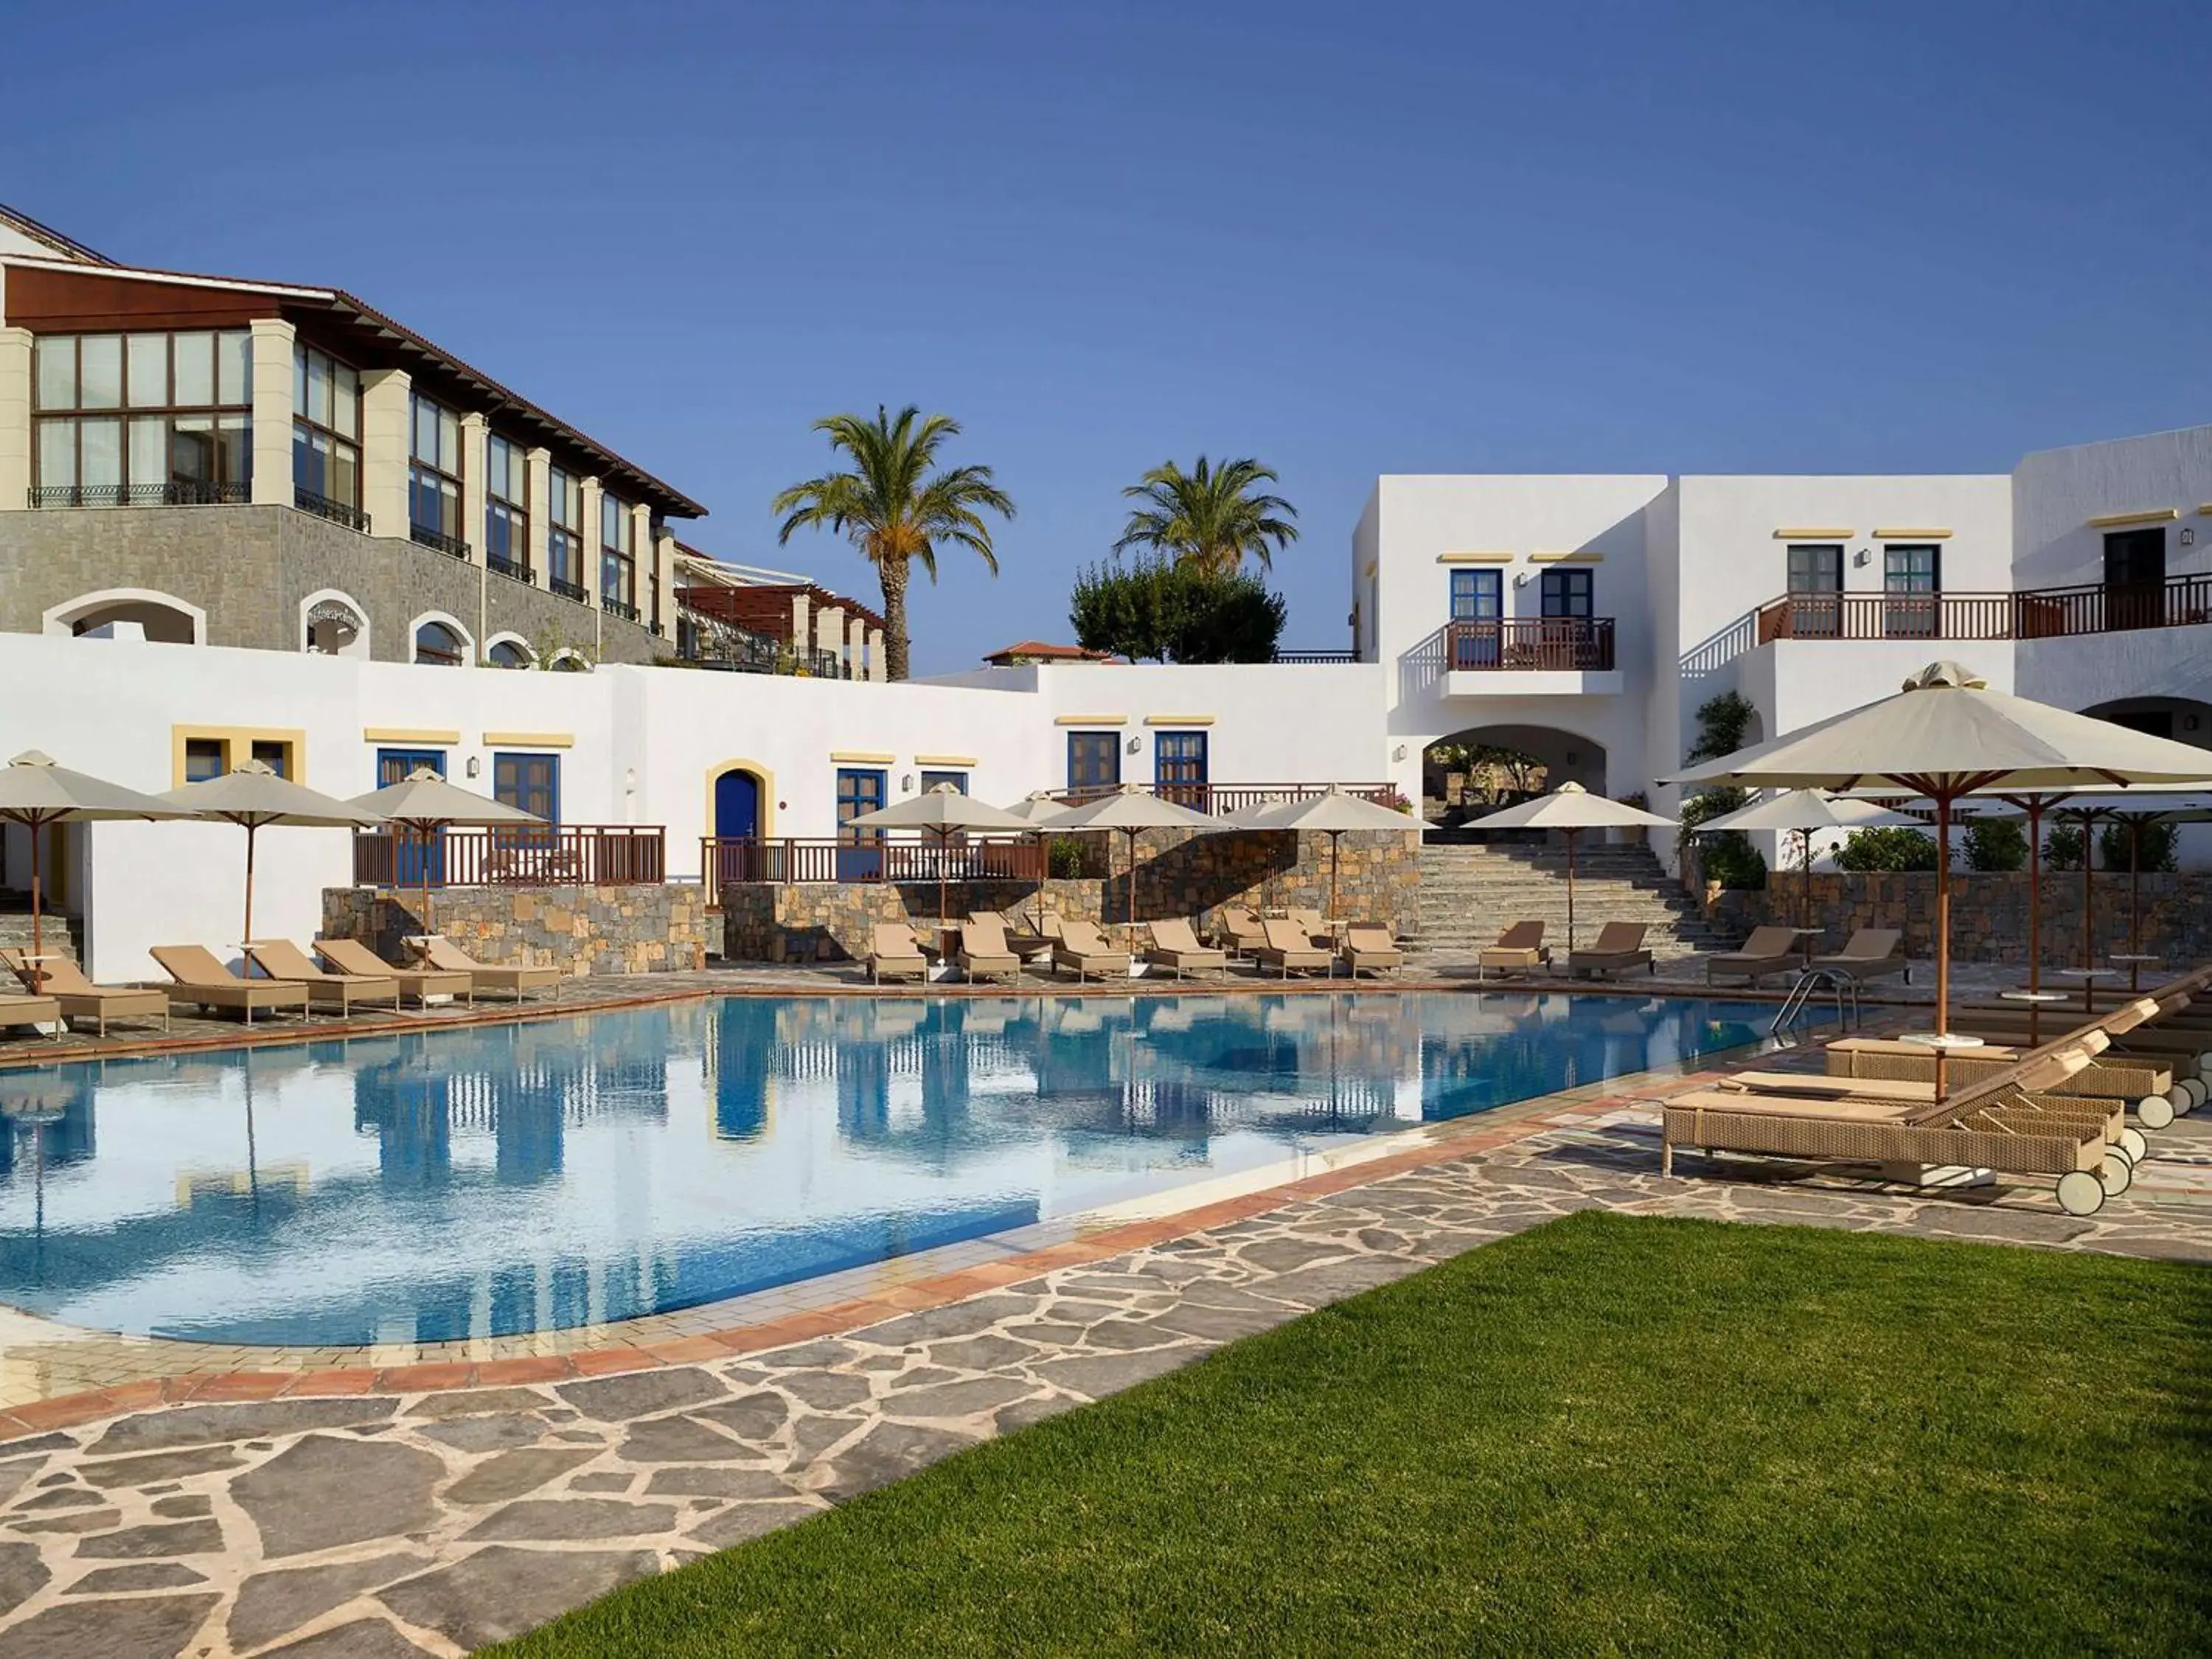 Pool view, Property Building in Creta Maris Resort